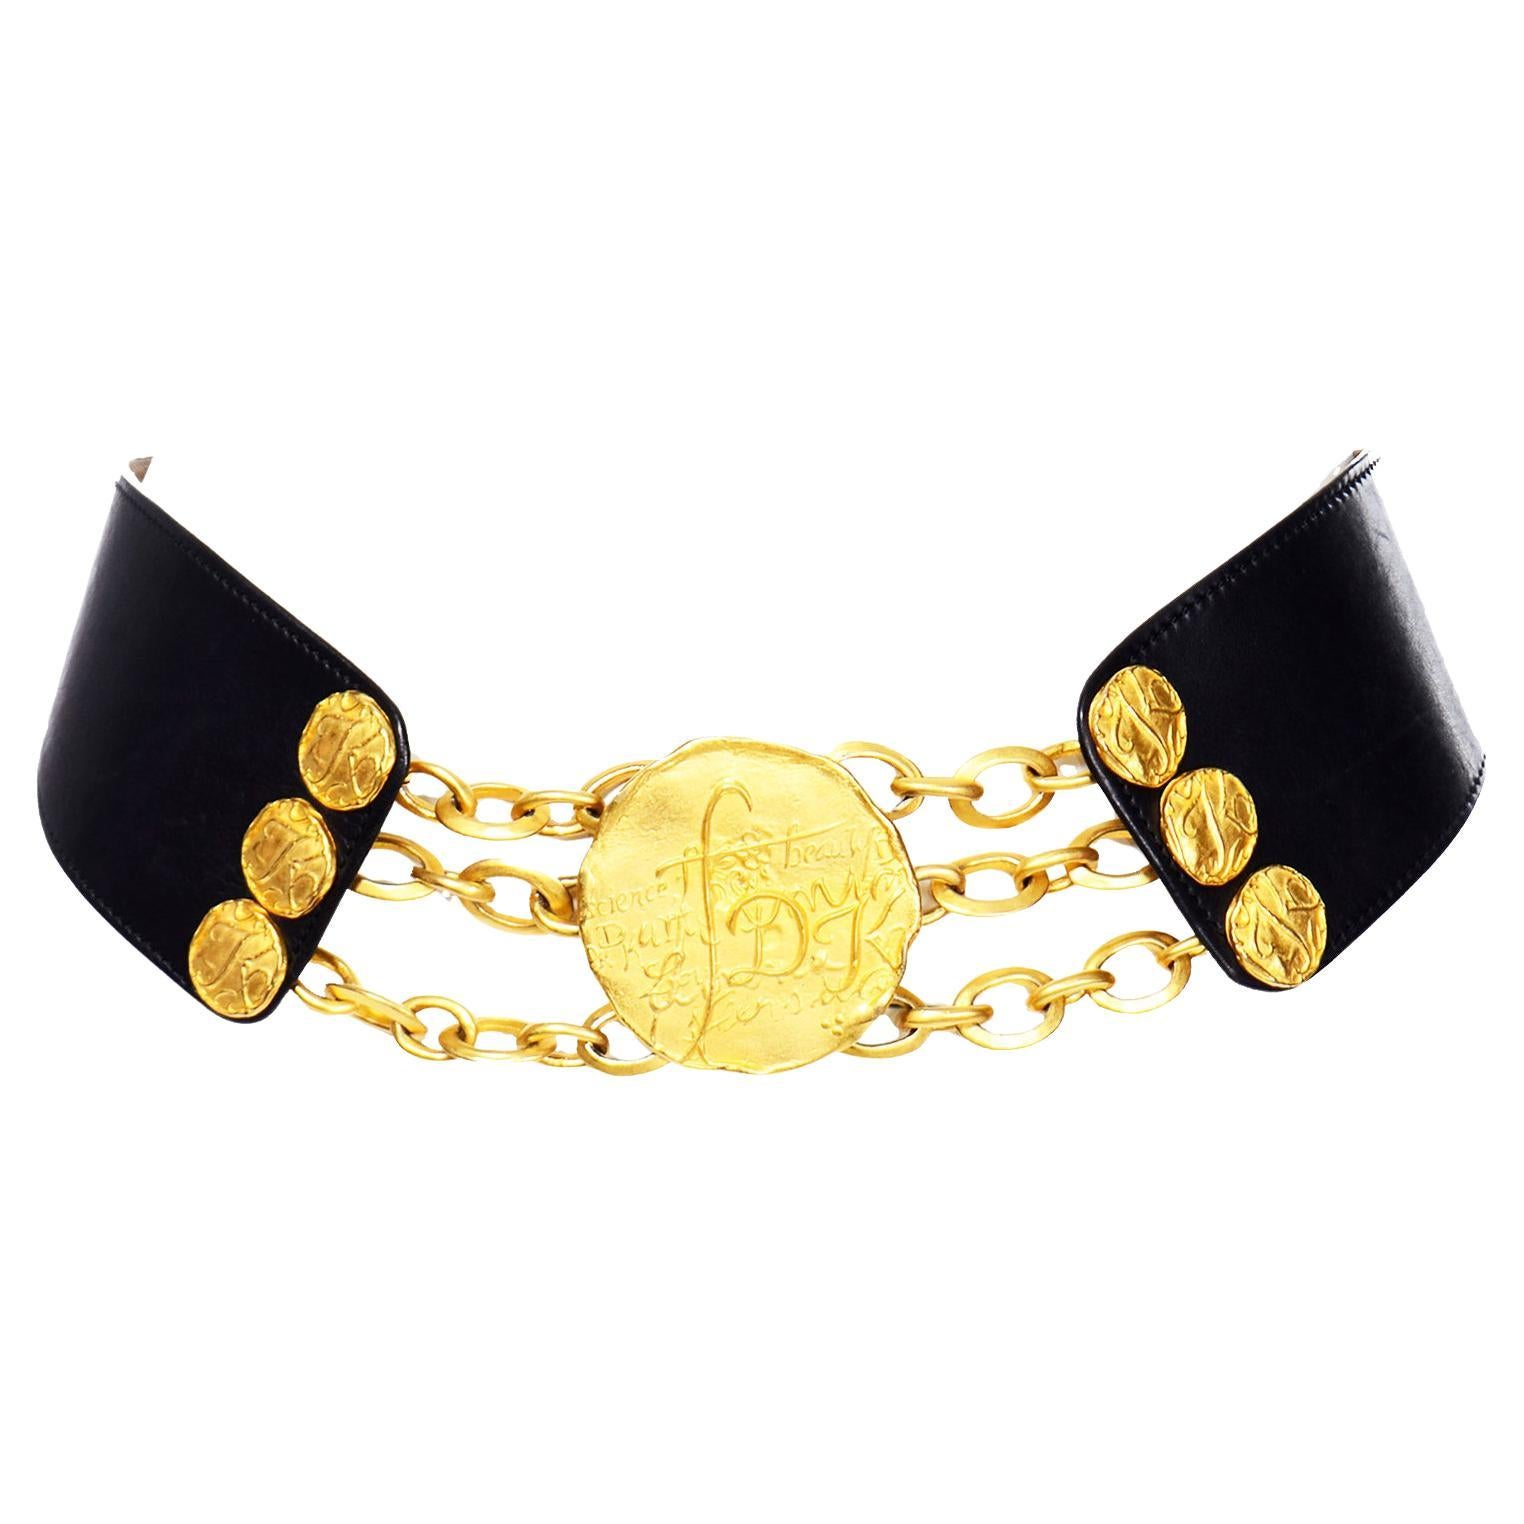 Donna Karan Robert Lee Morris Black and Gold Adjustable Size Belt For Sale